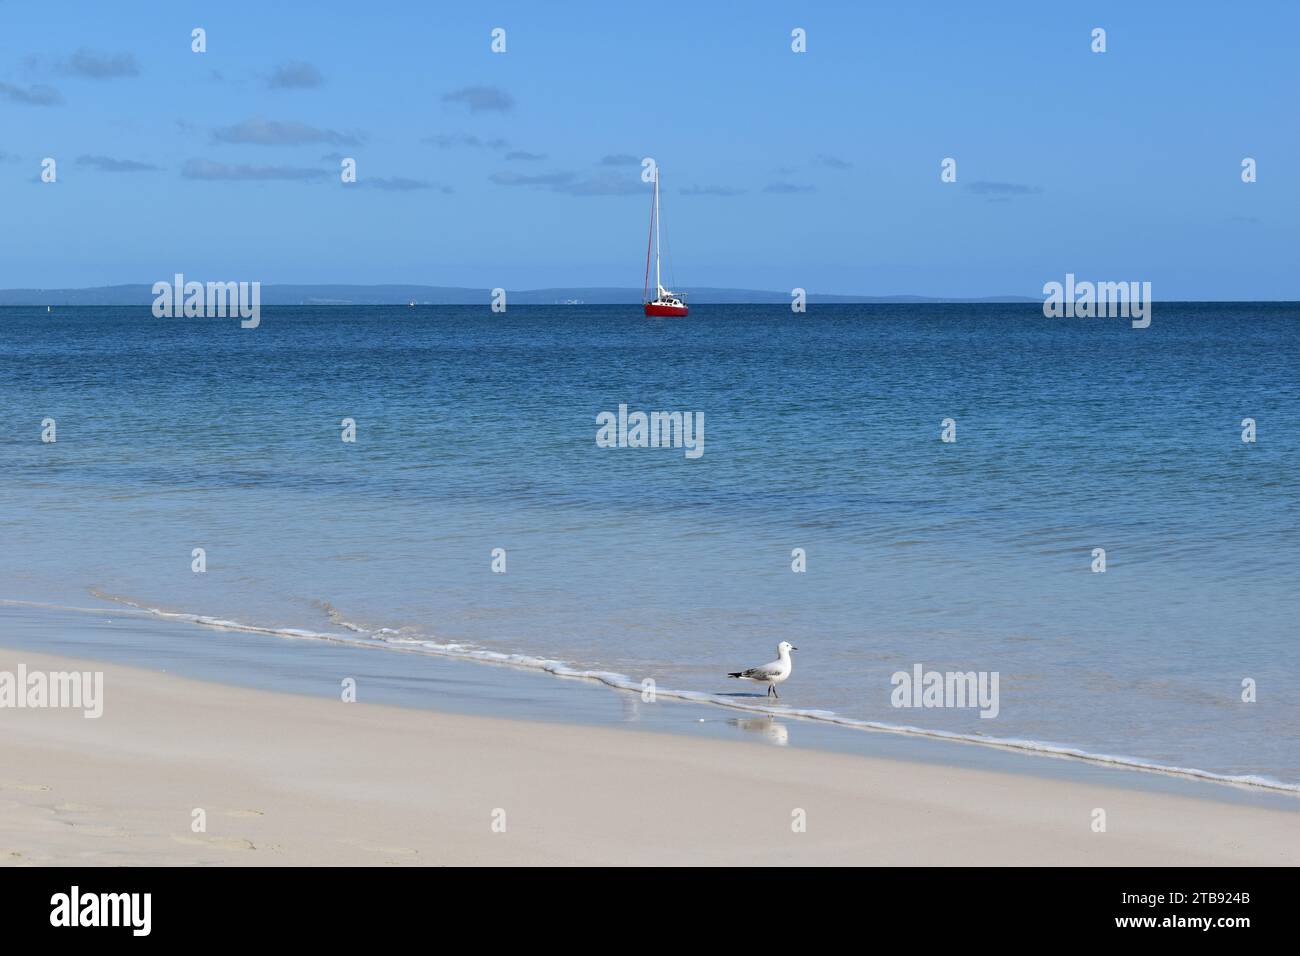 Idyllische, ruhige Strandszene mit Möwe auf dem Sand und roter Yacht im Hintergrund, Busselton, Western Australia, Australien Stockfoto